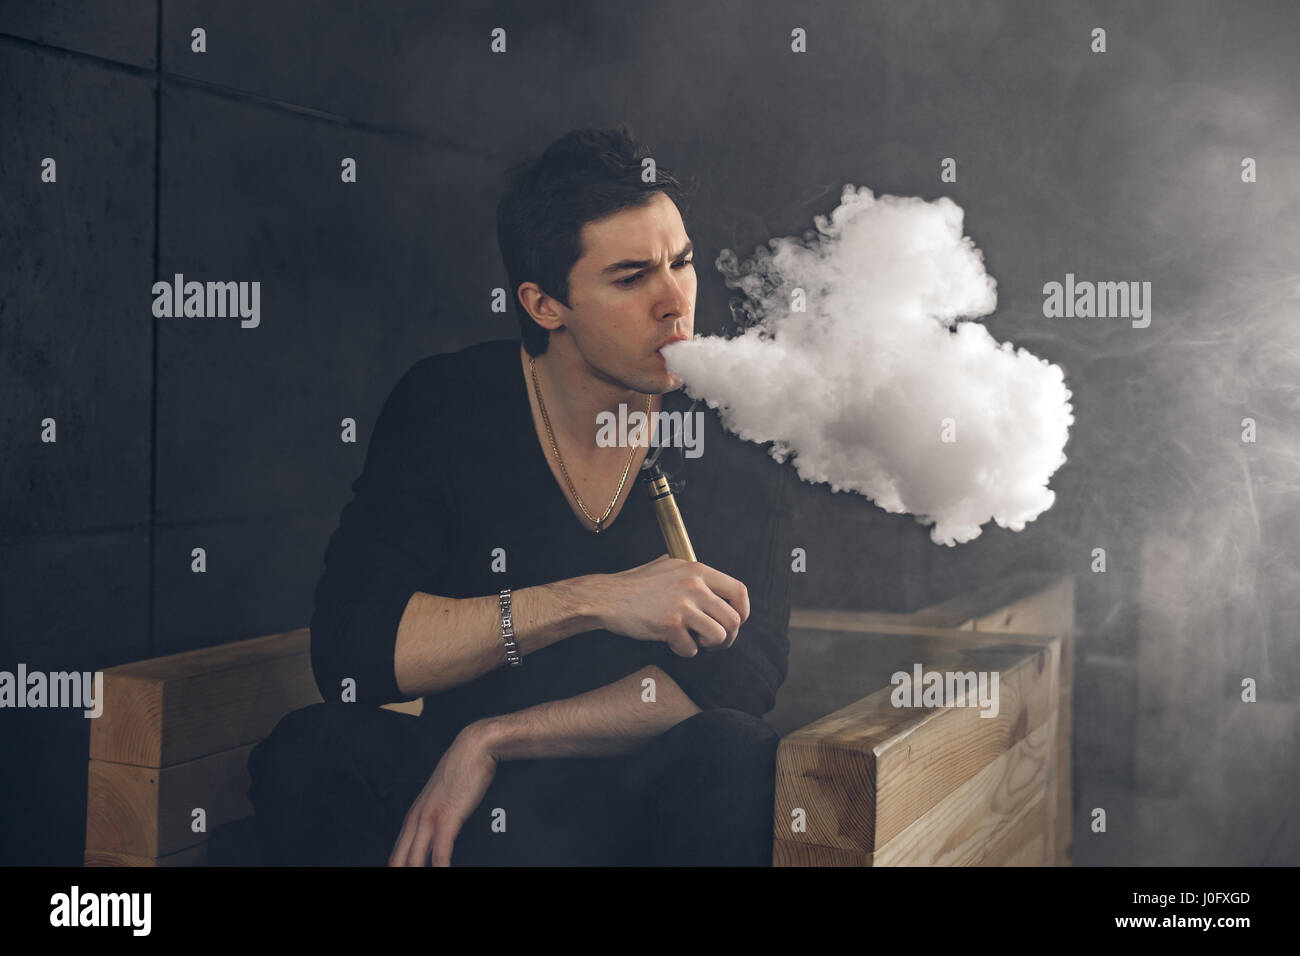 Dampfen Mann hält eine mod. Eine Wolke aus Dampf. Schwarzer Hintergrund. Stockfoto